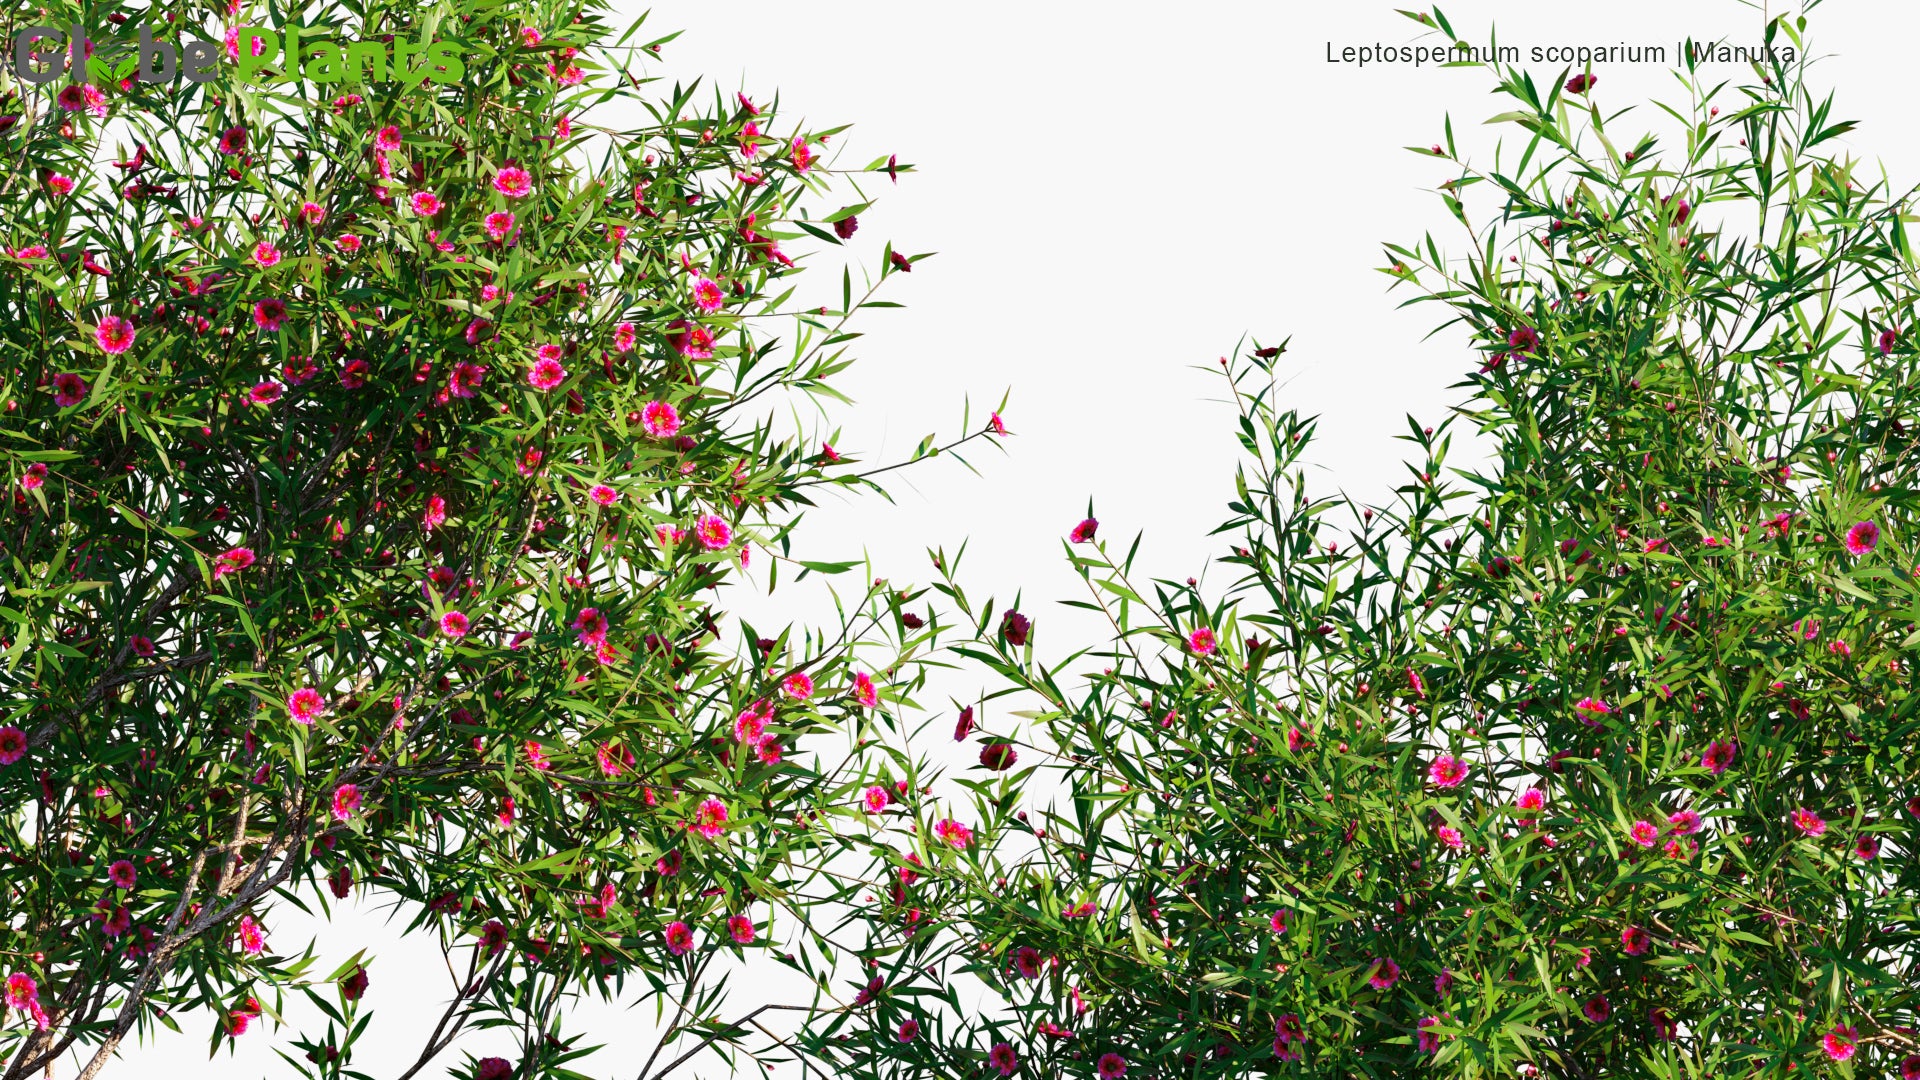 Leptospermum scoparium (Tea Tree)